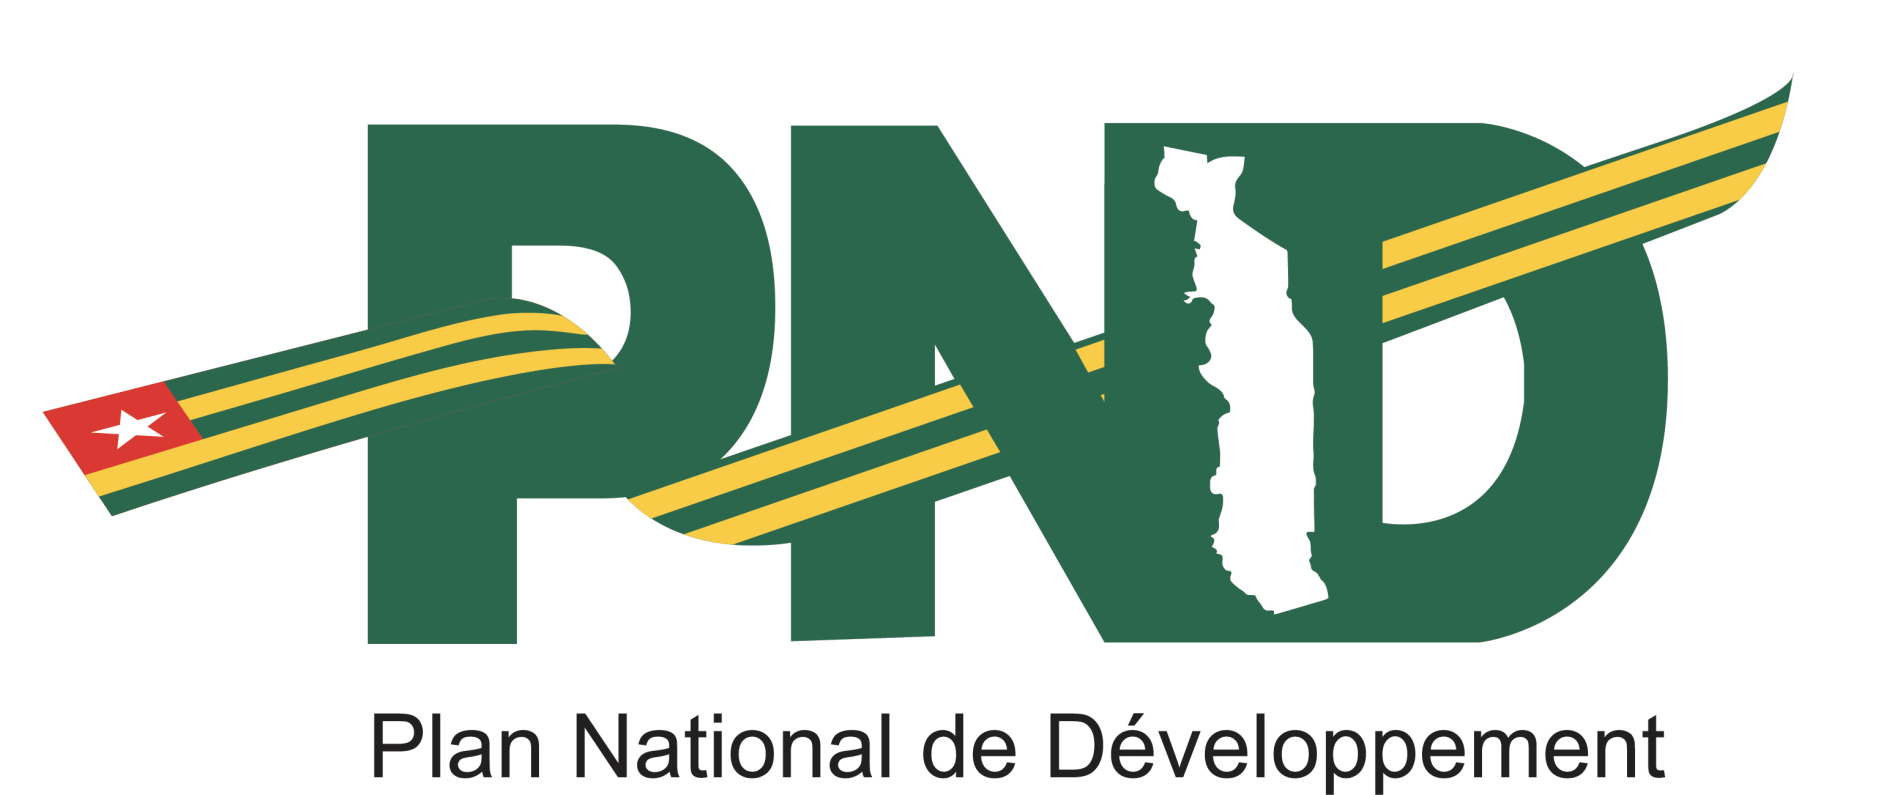 Plan National de Développement